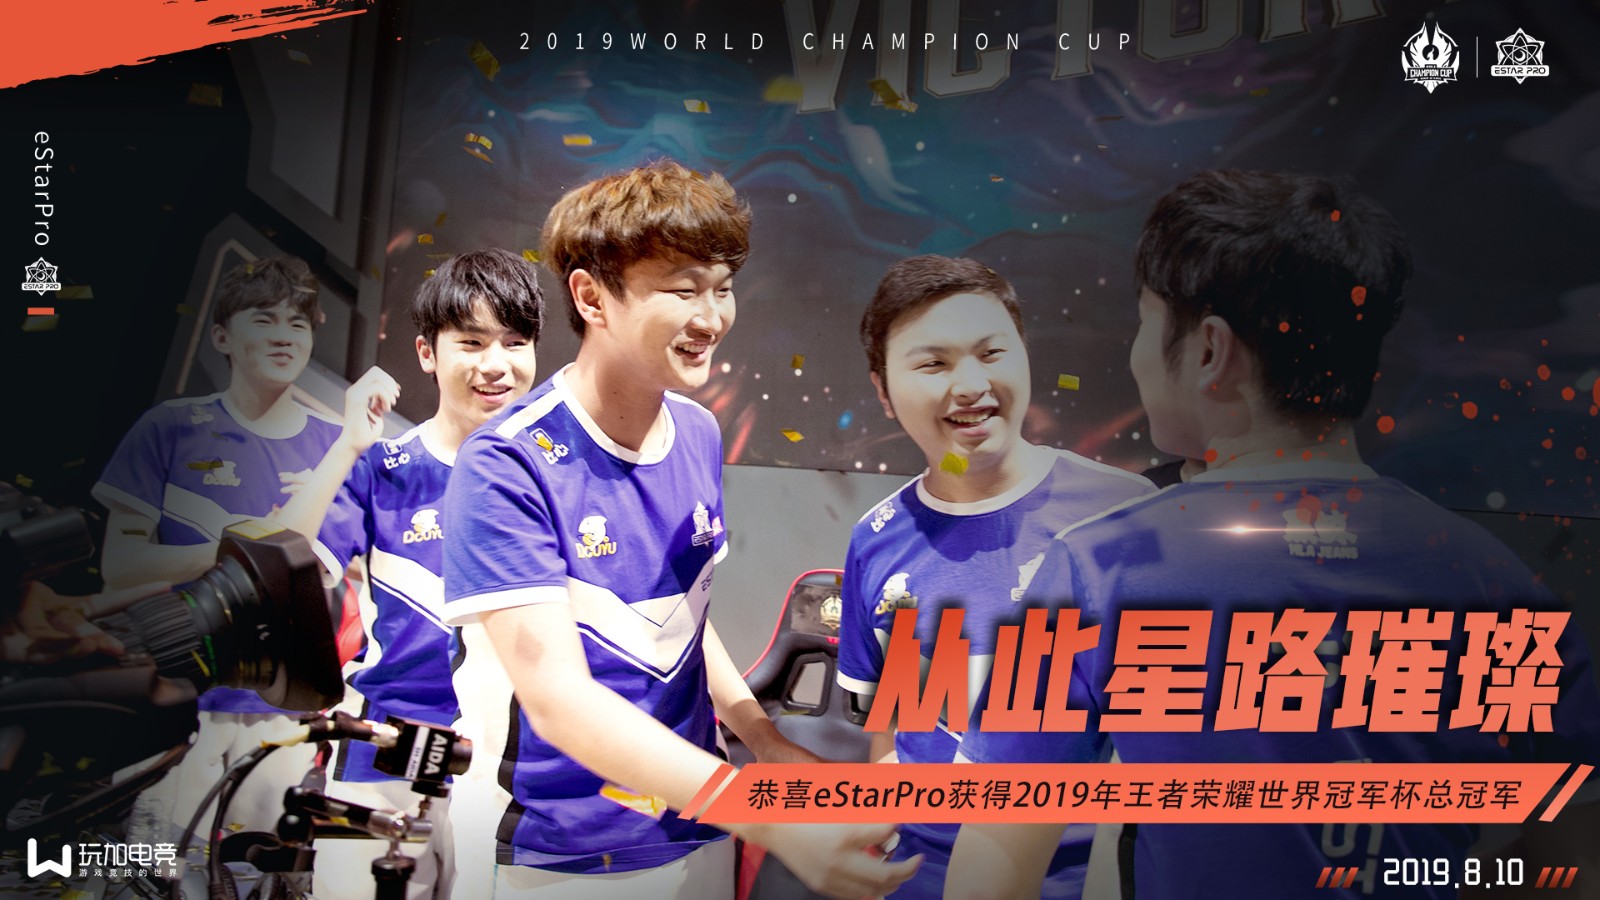 恭喜eStarPro获得2019年王者荣耀世冠冠军！